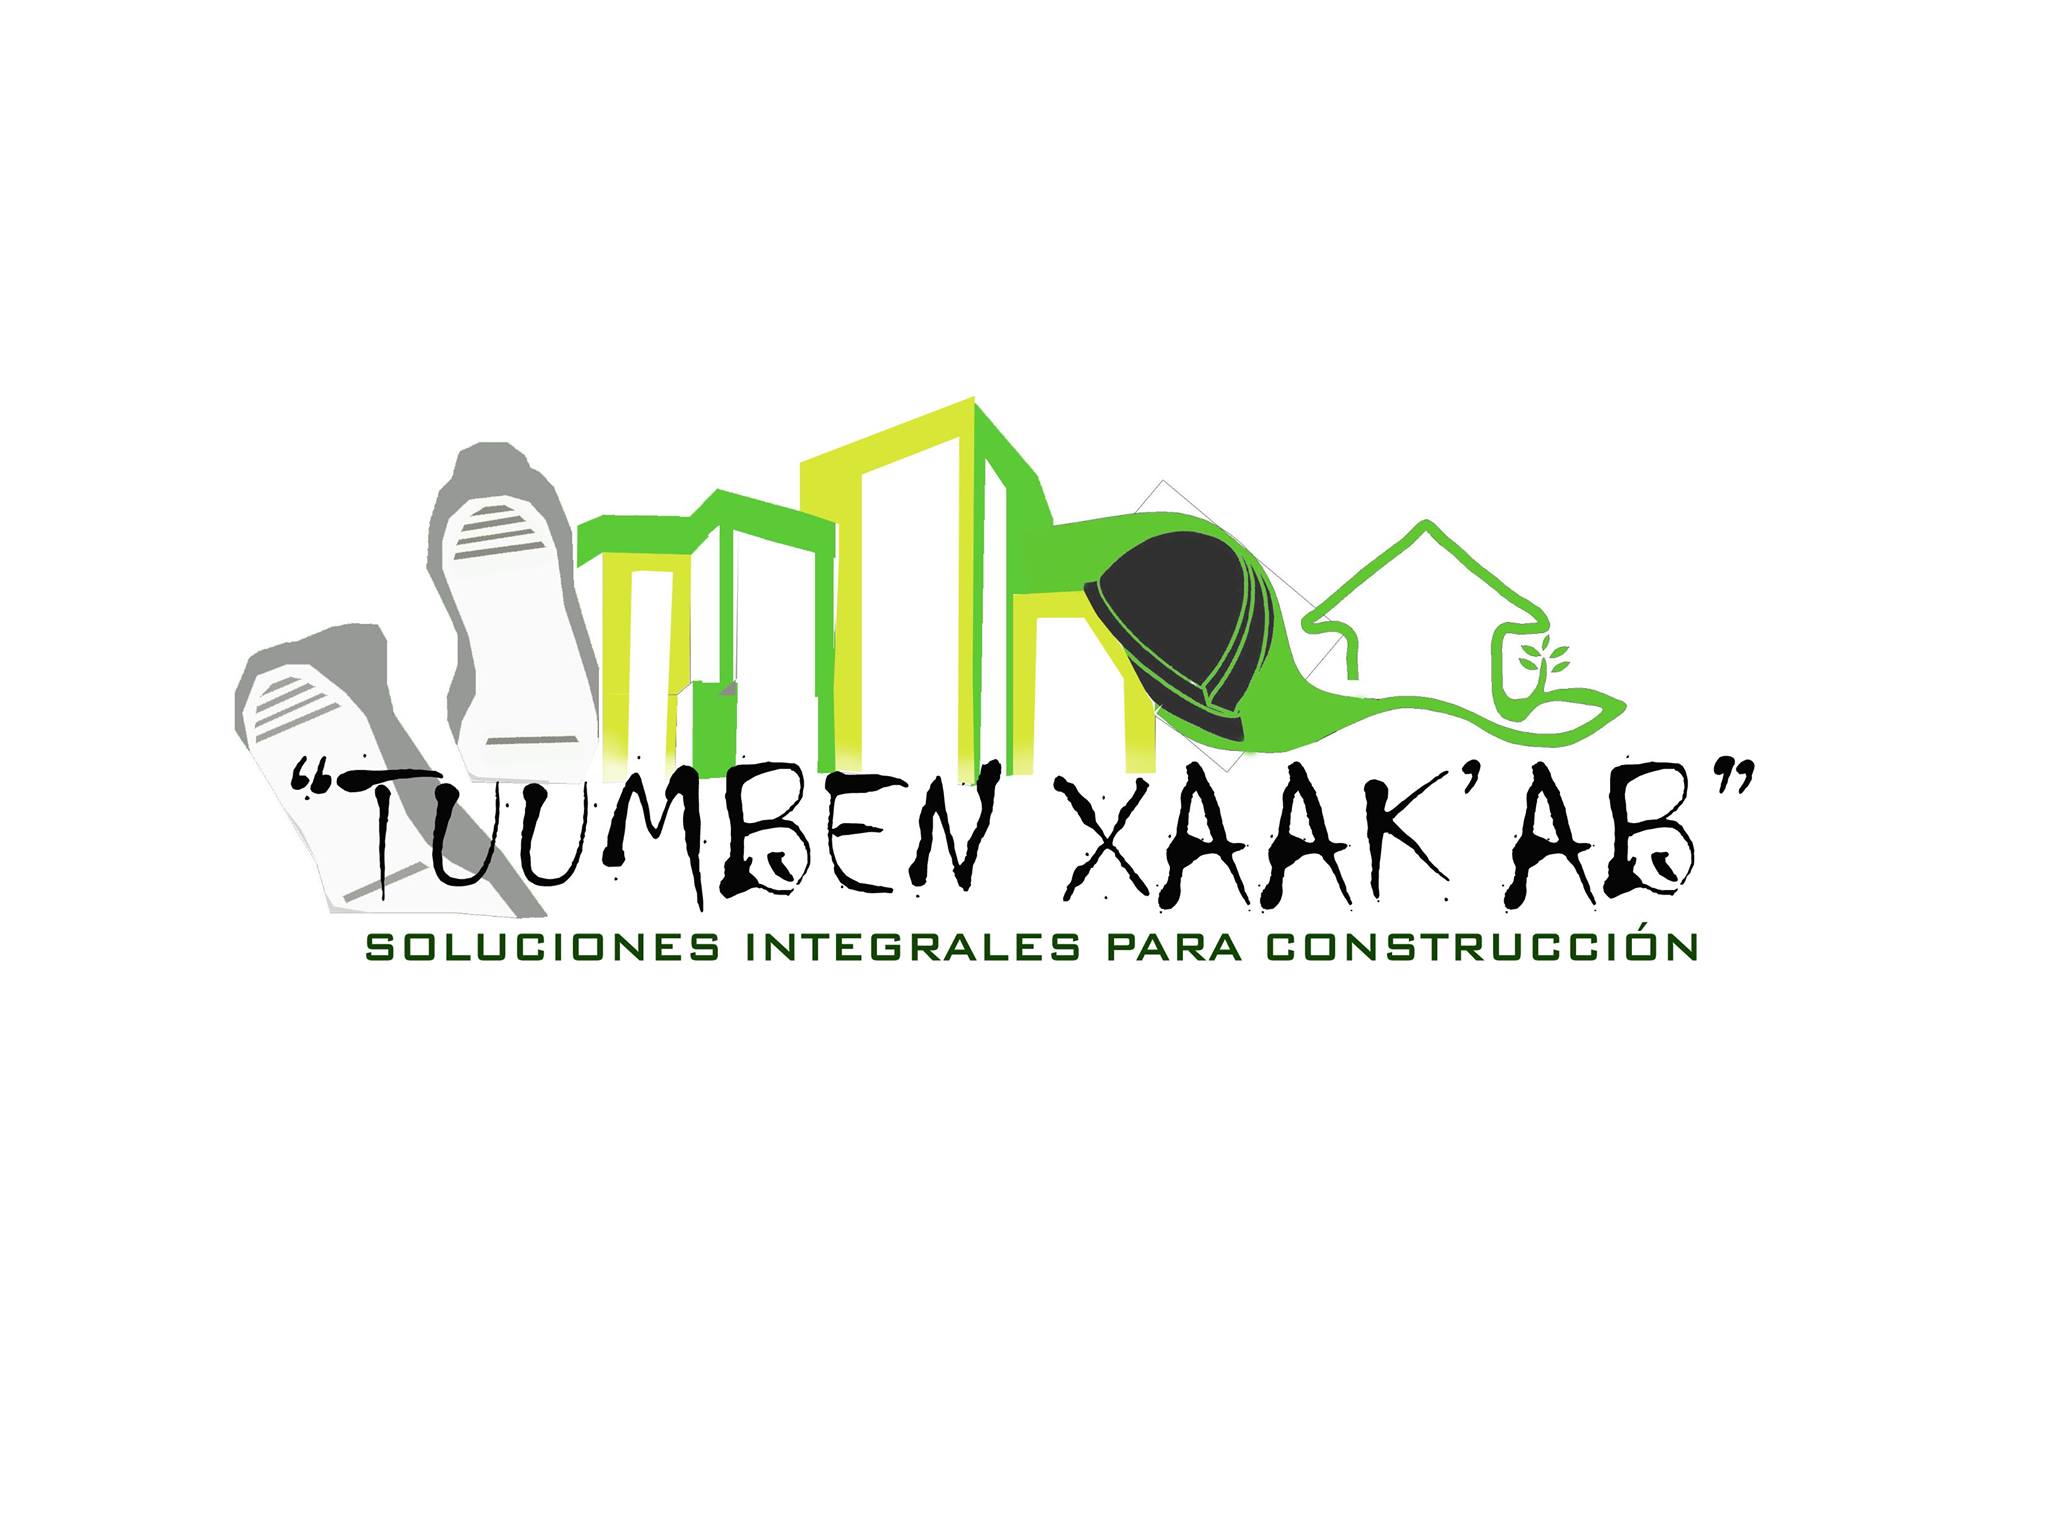 T-XAB"soluciones integrales para construccion"